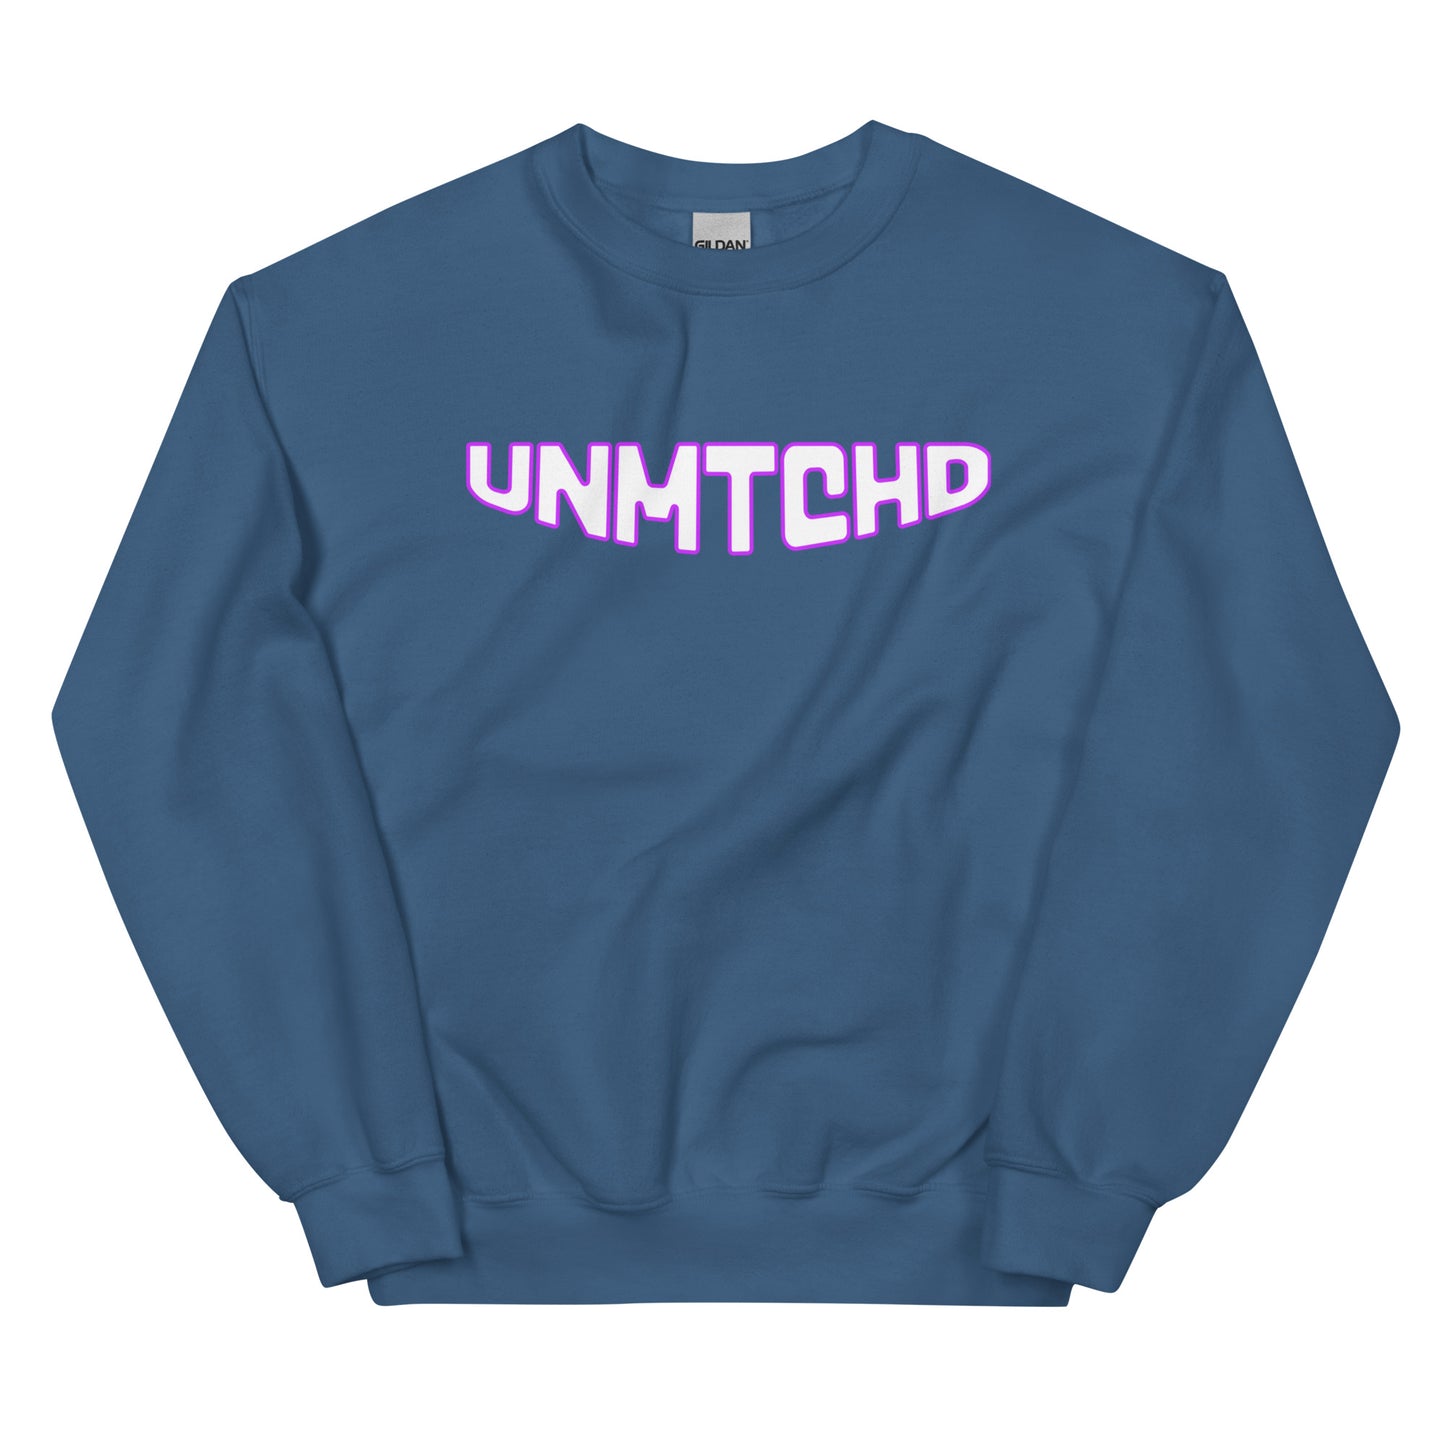 UNMTCHD - Unisex Sweatshirt